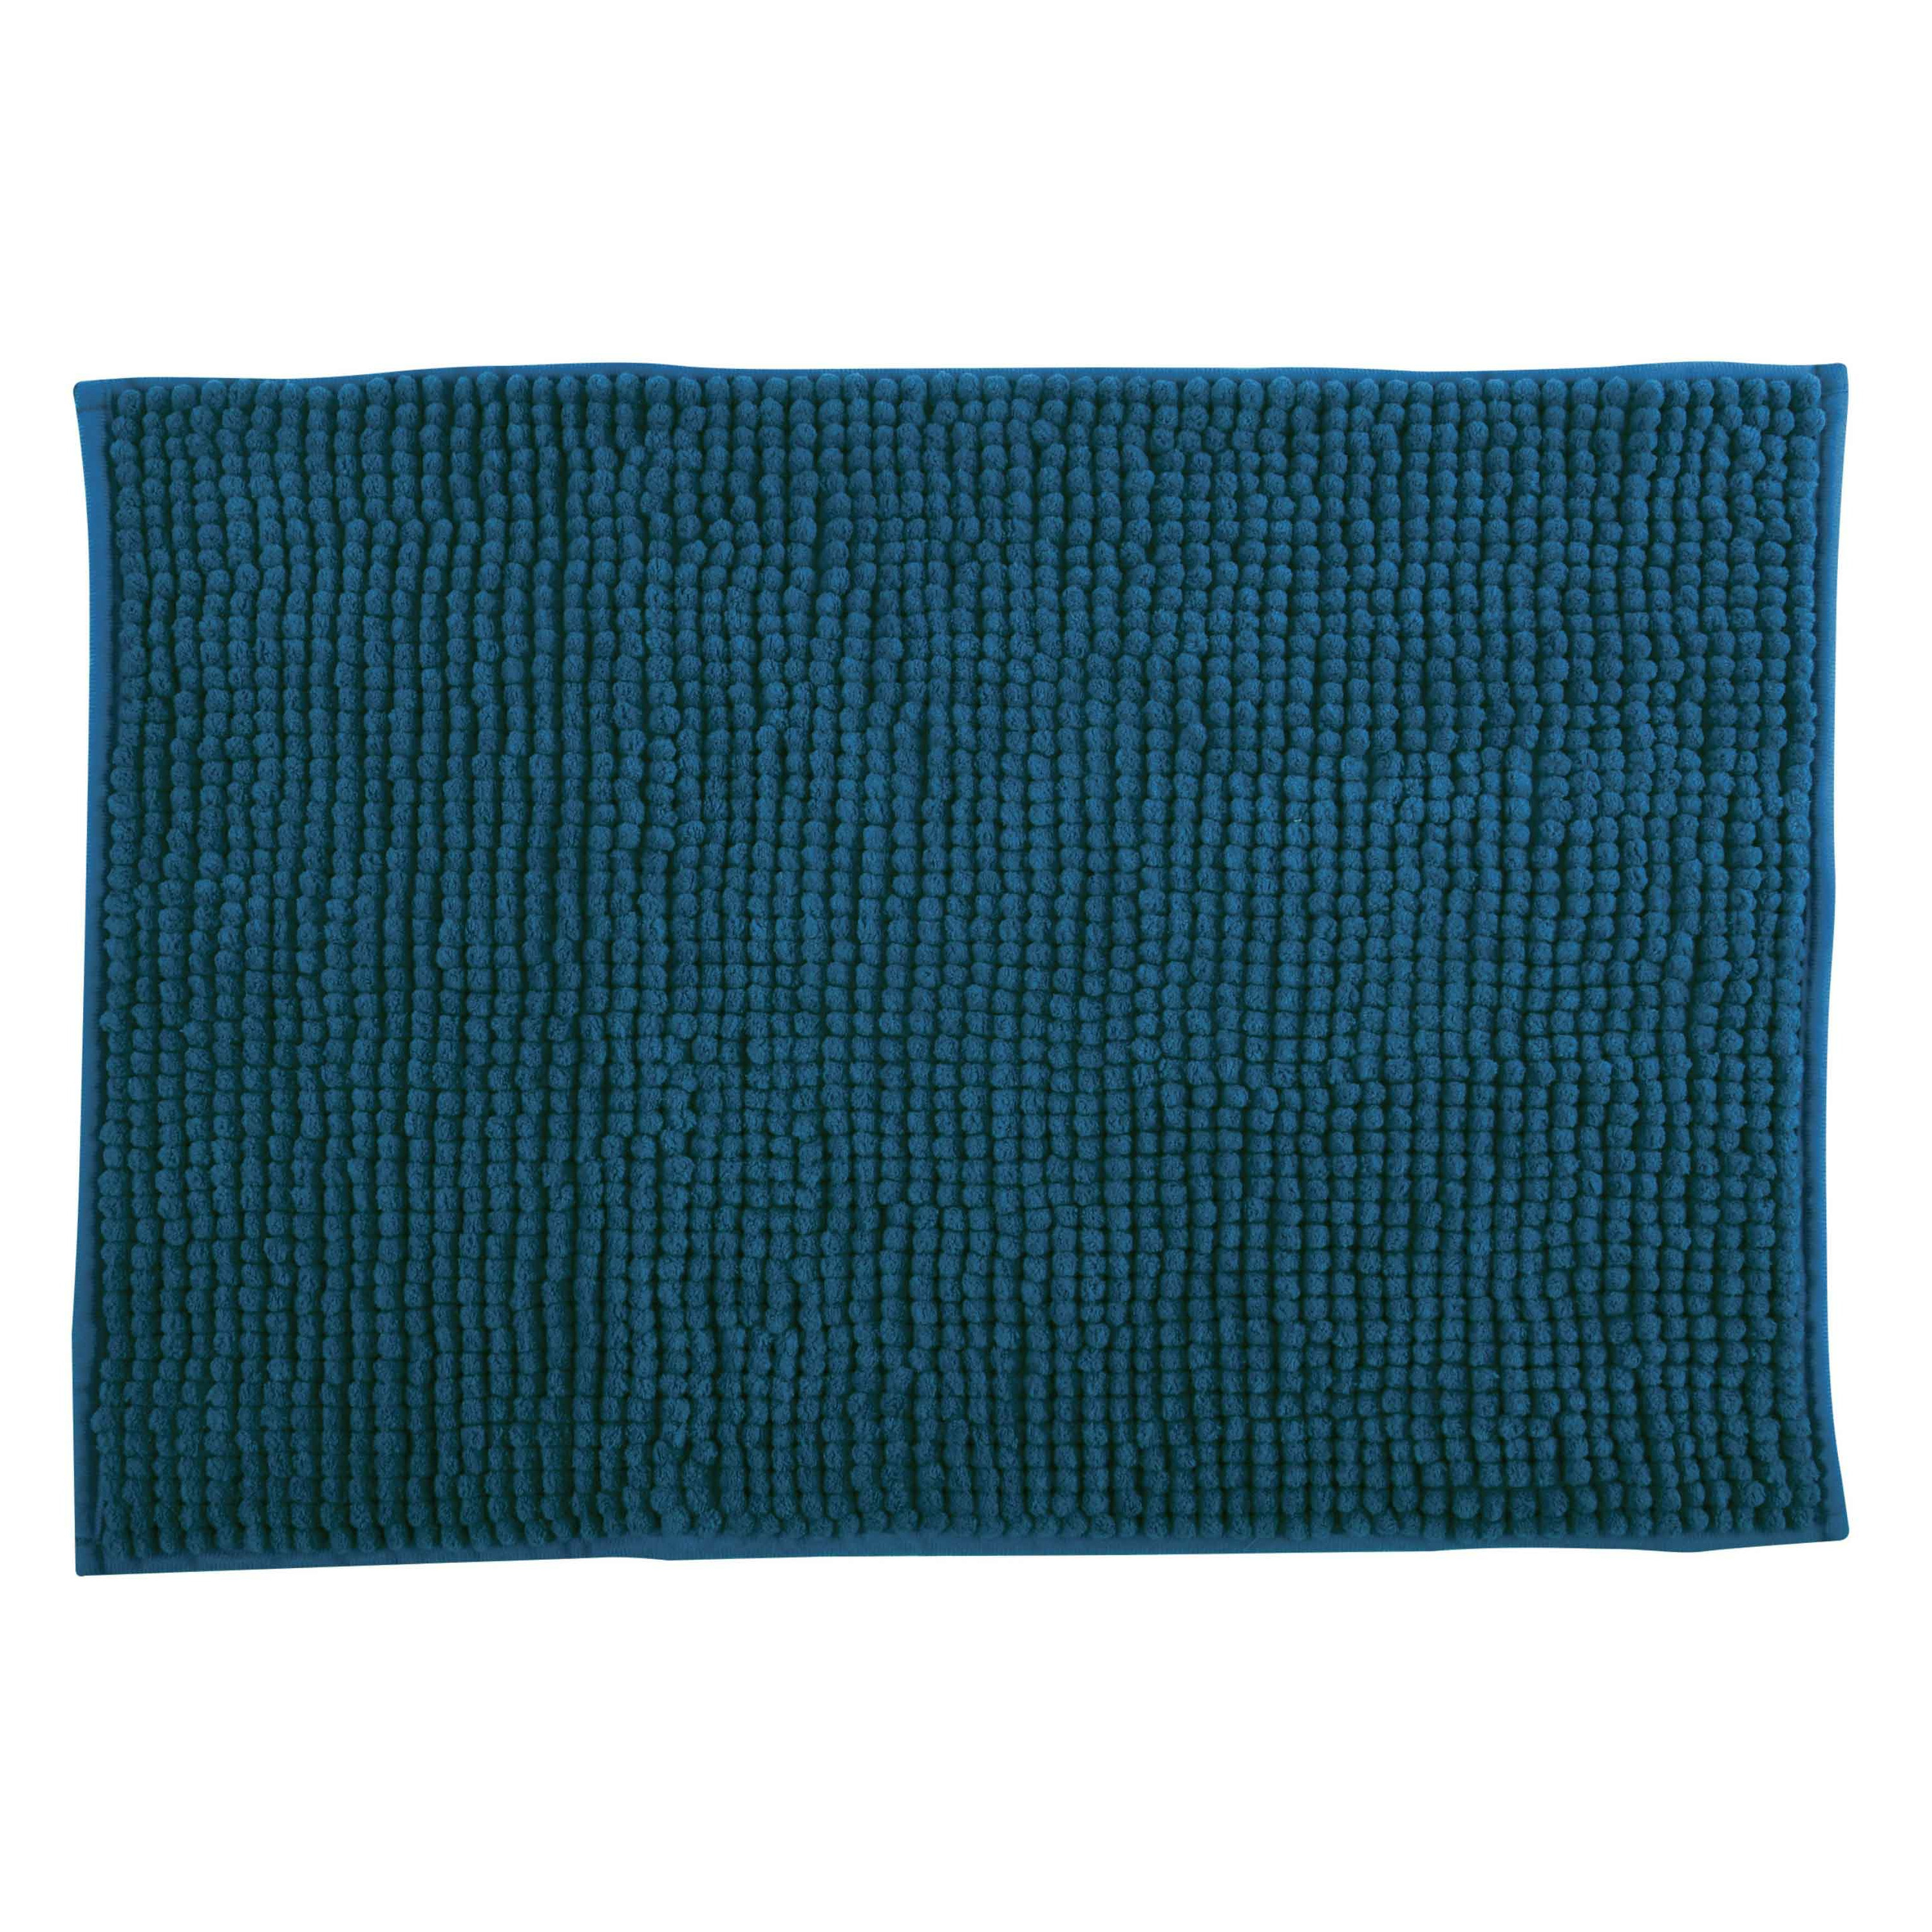 Badkamerkleedje-badmat tapijt voor op de vloer donkerblauw 60 x 90 cm